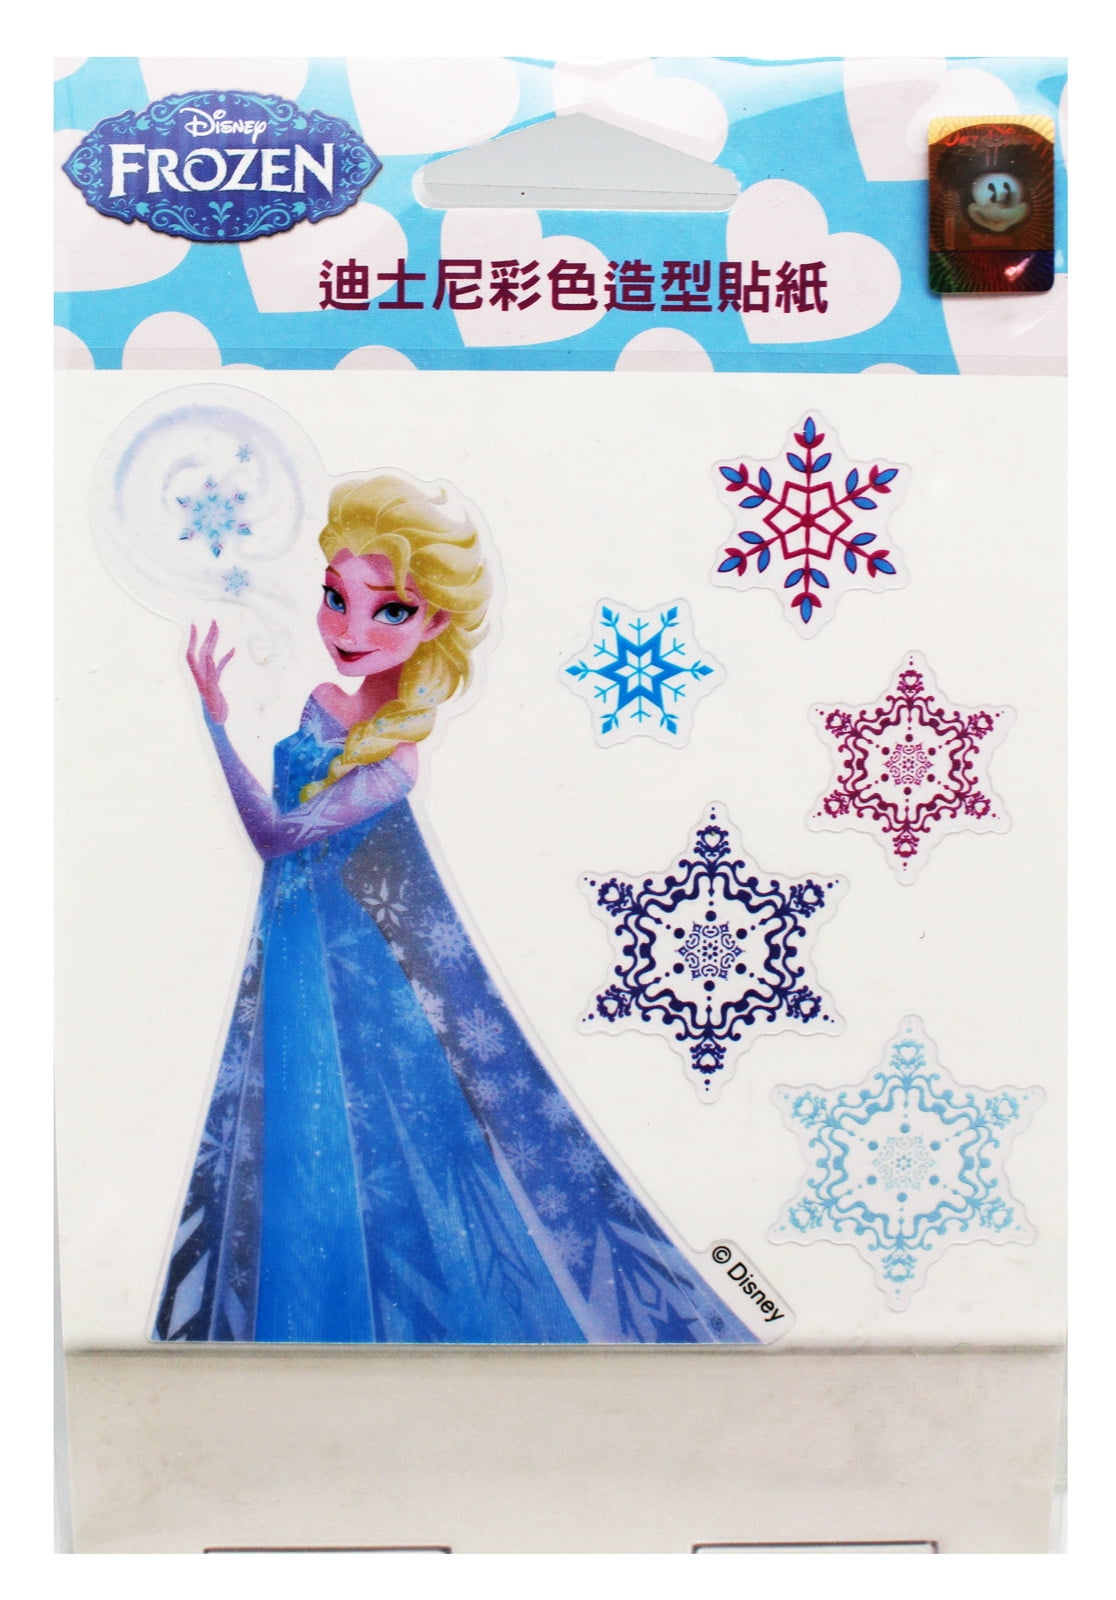 Fraude Niet meer geldig stel voor Disney's Frozen Princess Elsa and Snowflakes Reusable Stickers (6 Stickers)  - Walmart.com